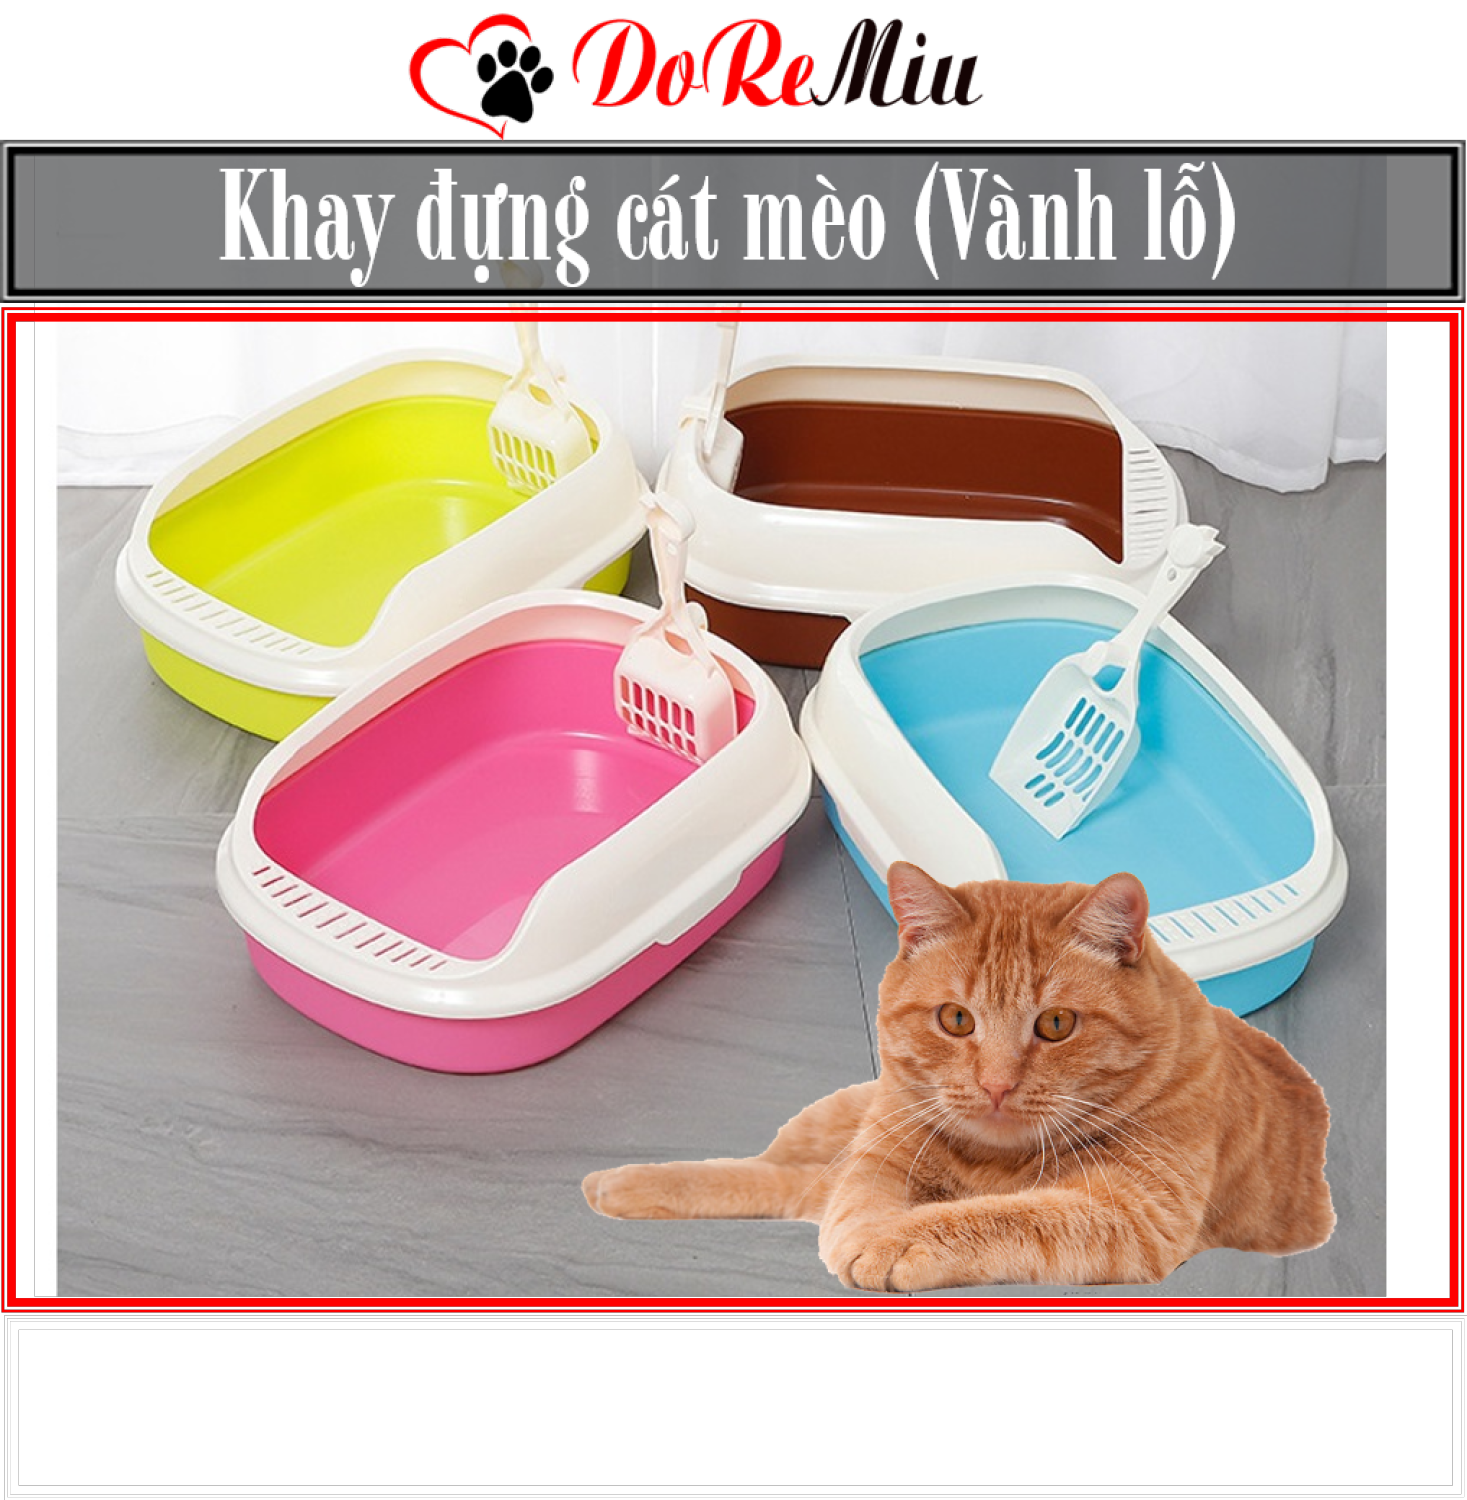 Orgo - Khay vệ sinh cho mèo - Khay vành lỗ Khay đựng cát vệ sinh mèo nhà